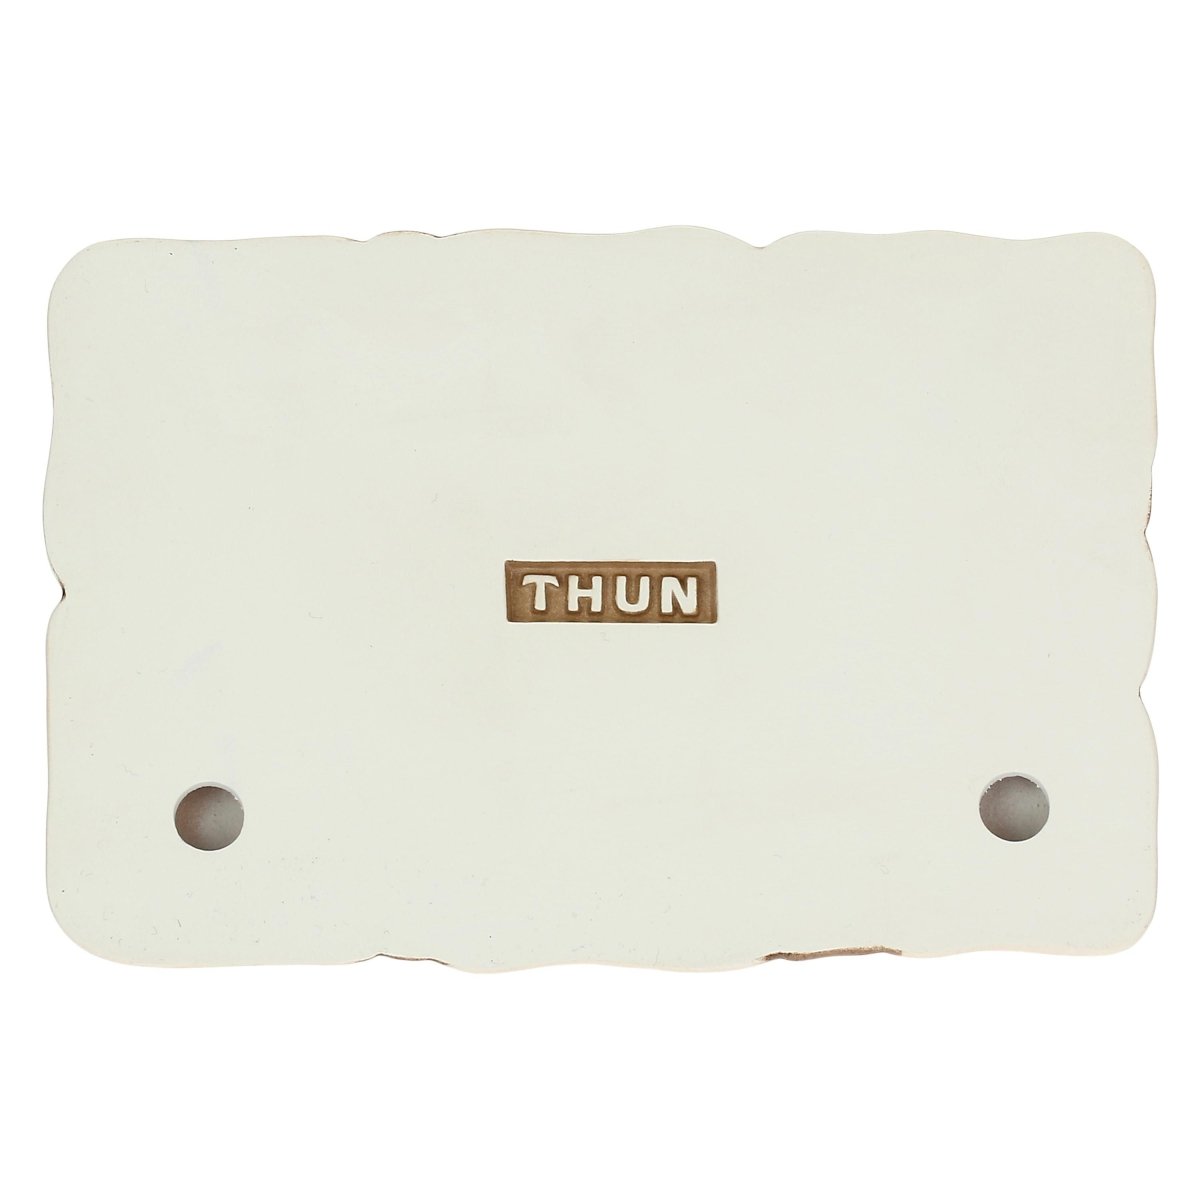 Thun- set 2 pezzi lastricato| rohome - Rohome